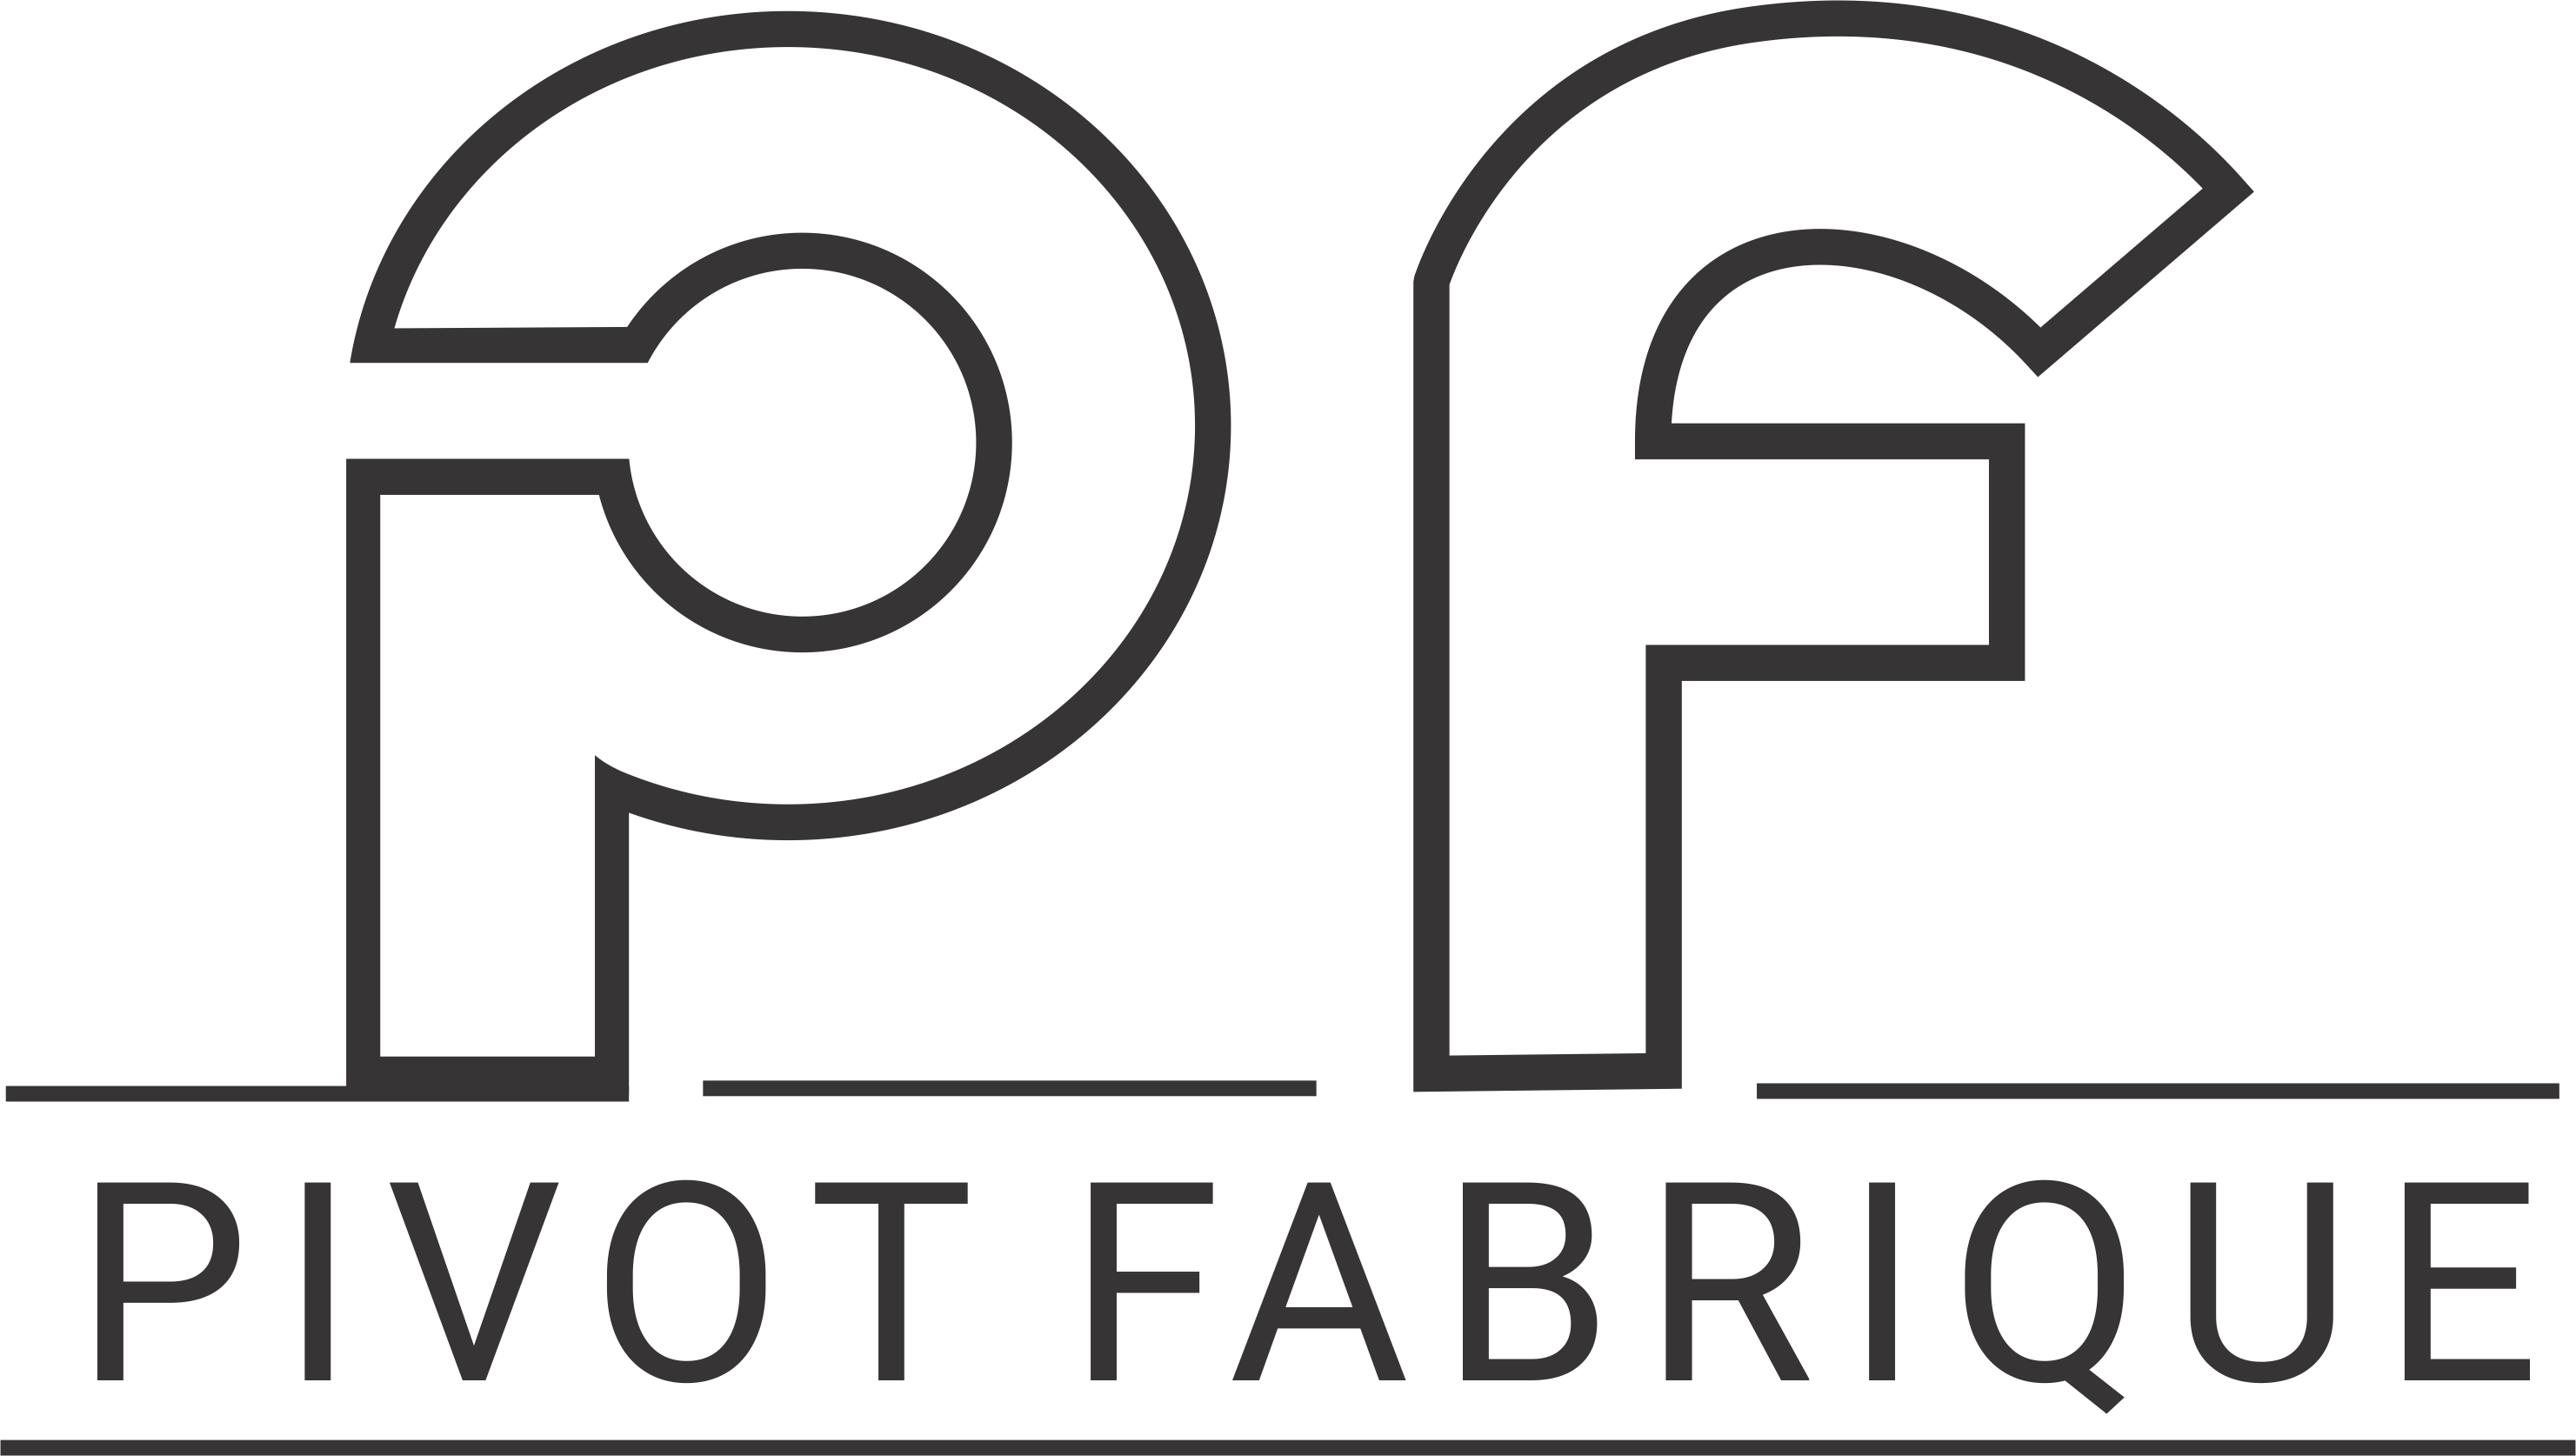 Pivot Fabrique - Precision Components Manufacturers